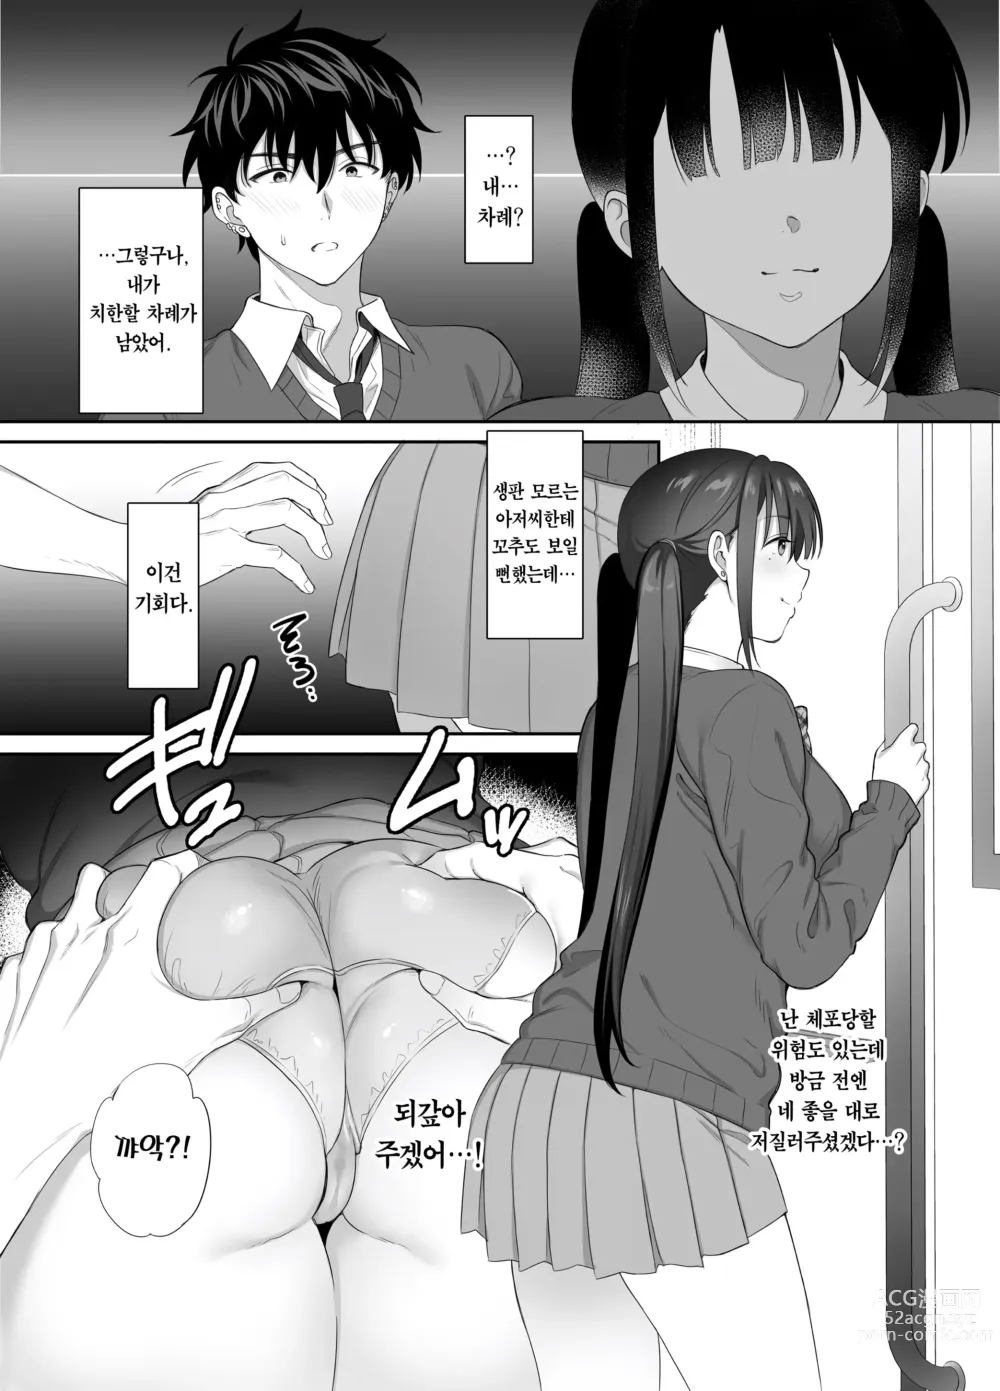 Page 33 of doujinshi 폐허에서 지뢰녀랑 밤새 질내사정 섹스한 이야기 2